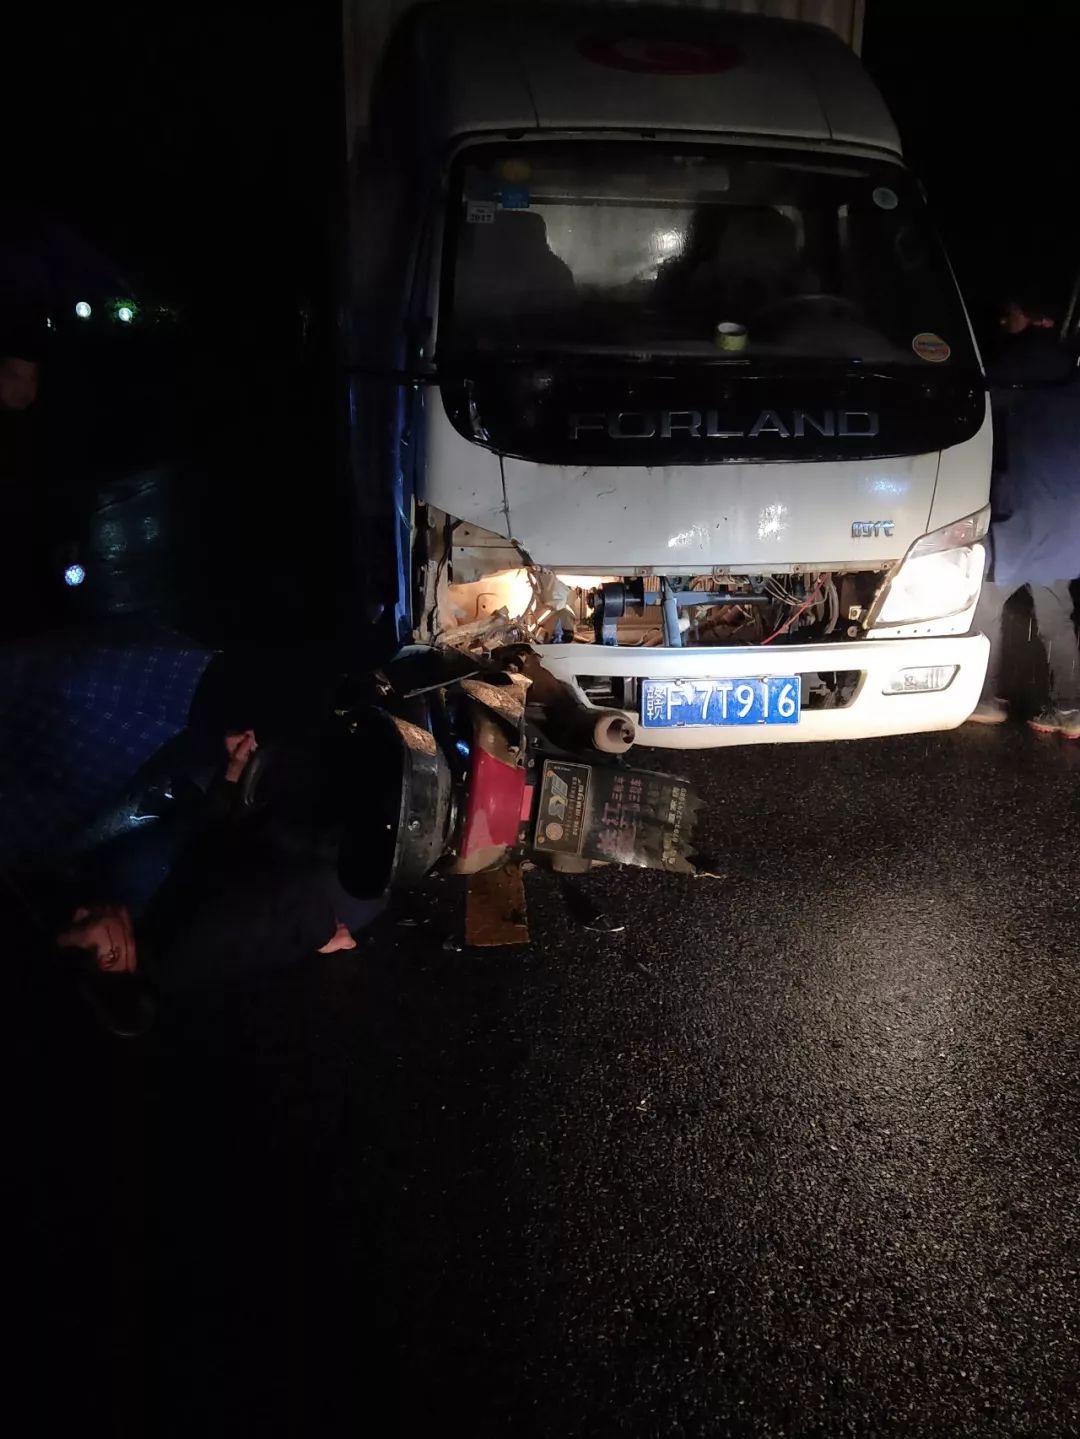 余干梅港乡一摩托车与小货车相撞,伤者紧急被送往医院!